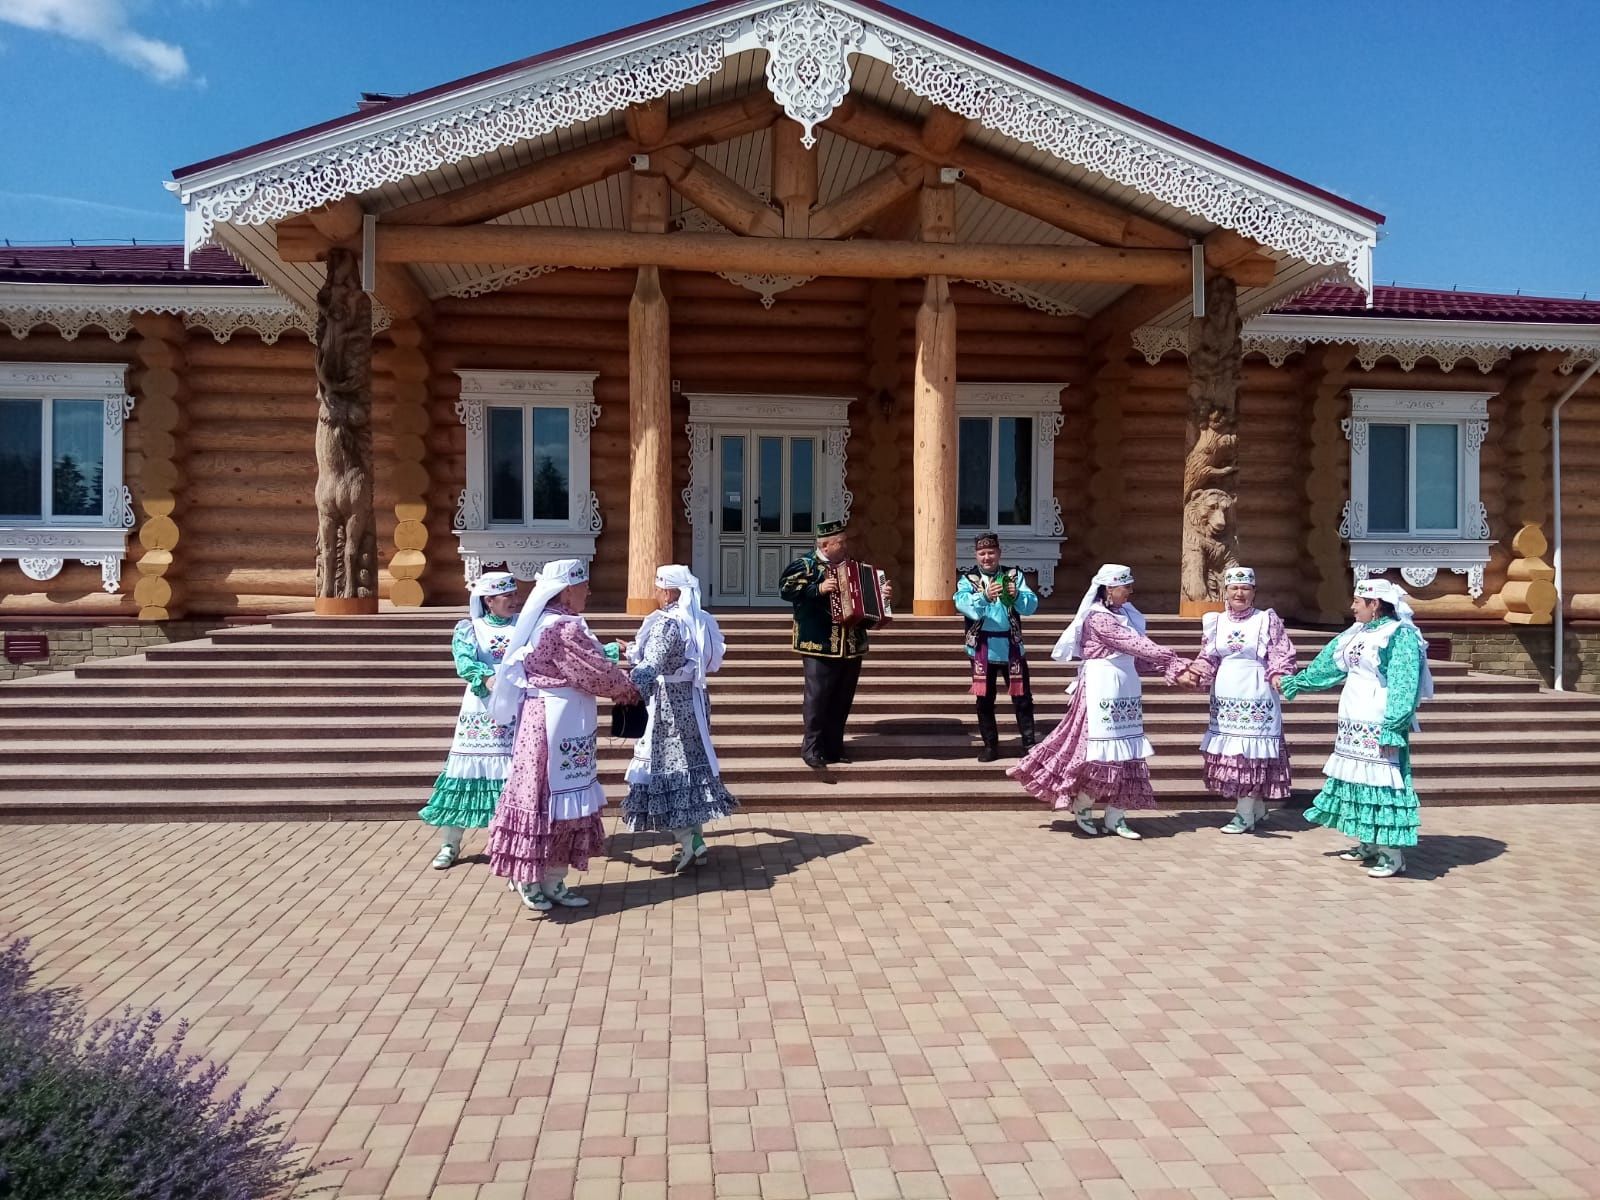 Ветераны из Бугульминского района посетили краеведческий музей в соседнем районе и подготовили сюрприз для его сотрудников